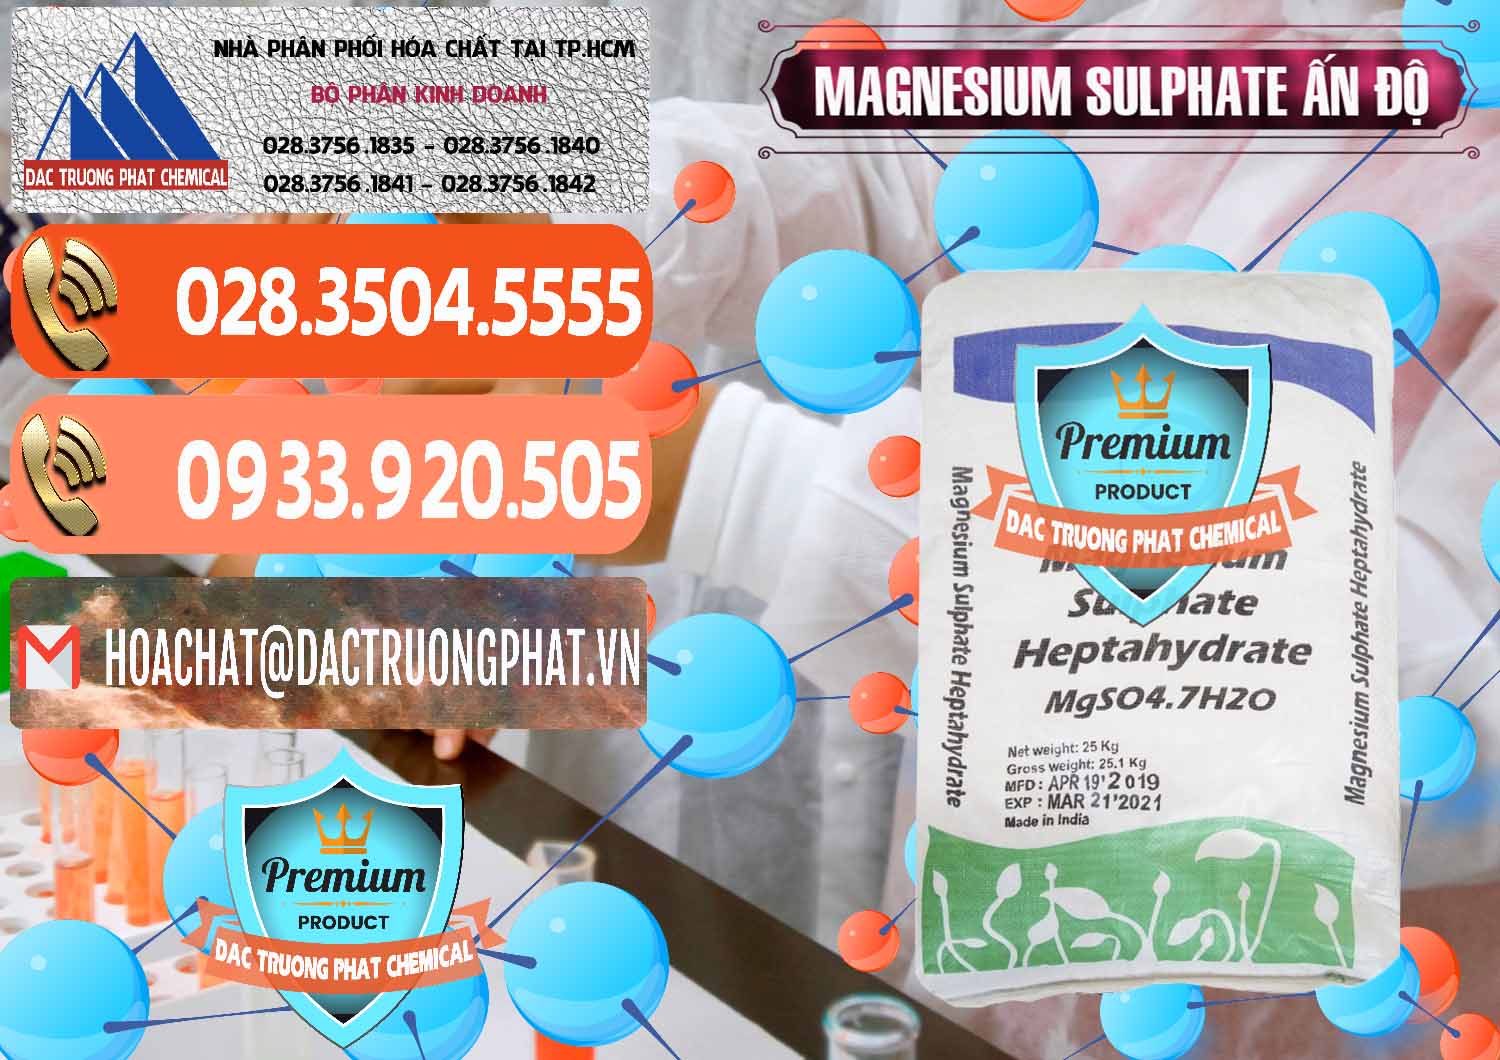 Chuyên bán ( cung cấp ) MGSO4.7H2O – Magnesium Sulphate Heptahydrate Ấn Độ India - 0362 - Cty chuyên kinh doanh - phân phối hóa chất tại TP.HCM - hoachatmientay.com